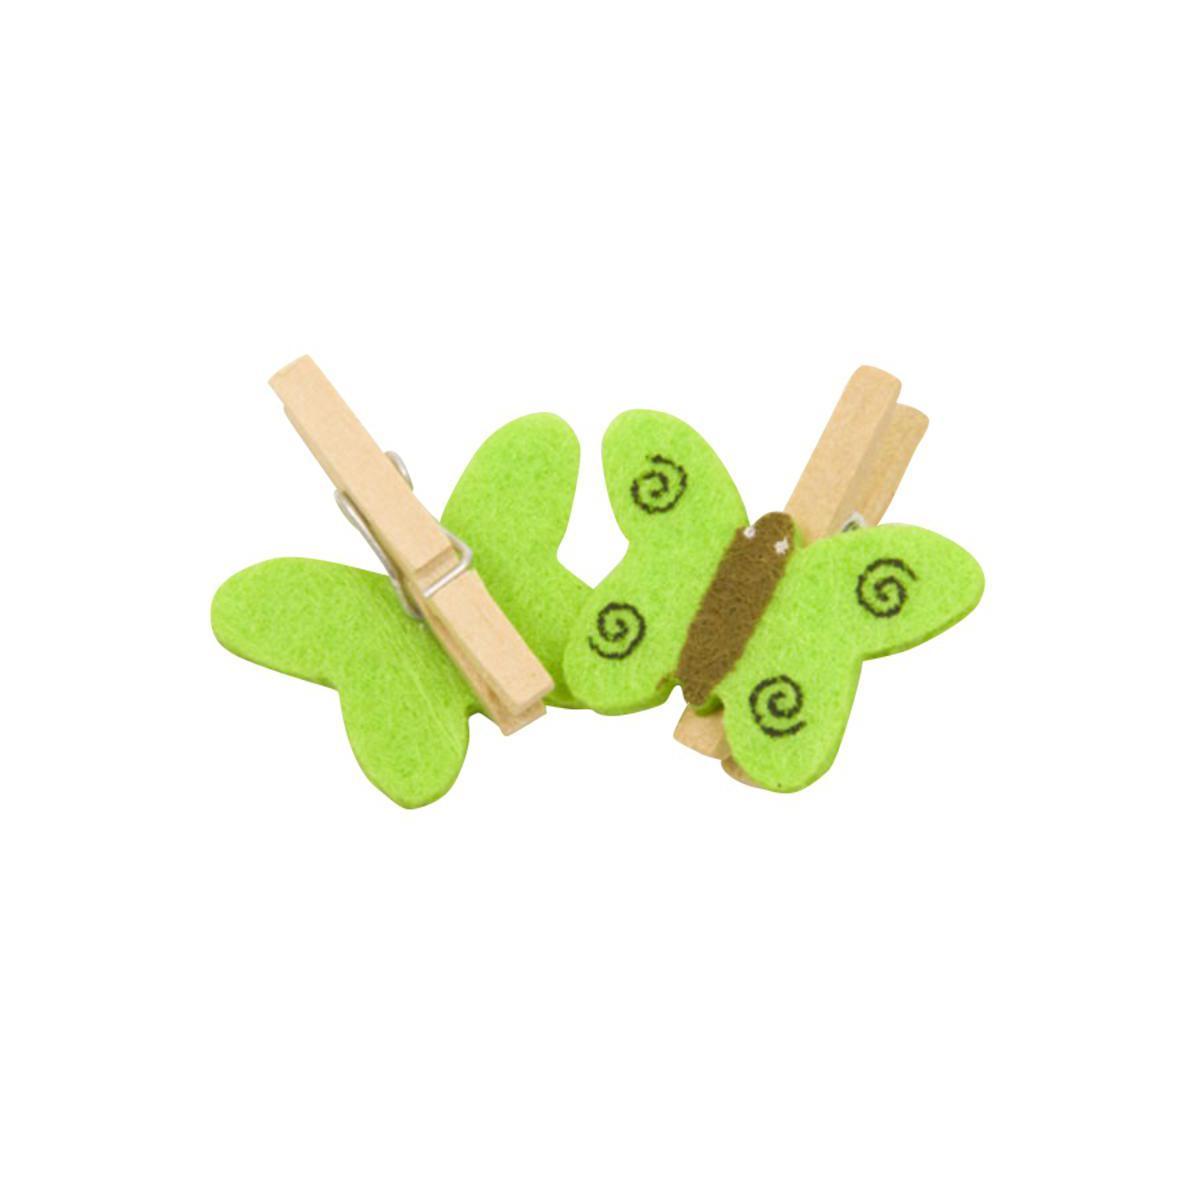 10 pinces décoratives avec papillon - Bois et feutrine - 2,5 x 2,5 cm - Vert menthe